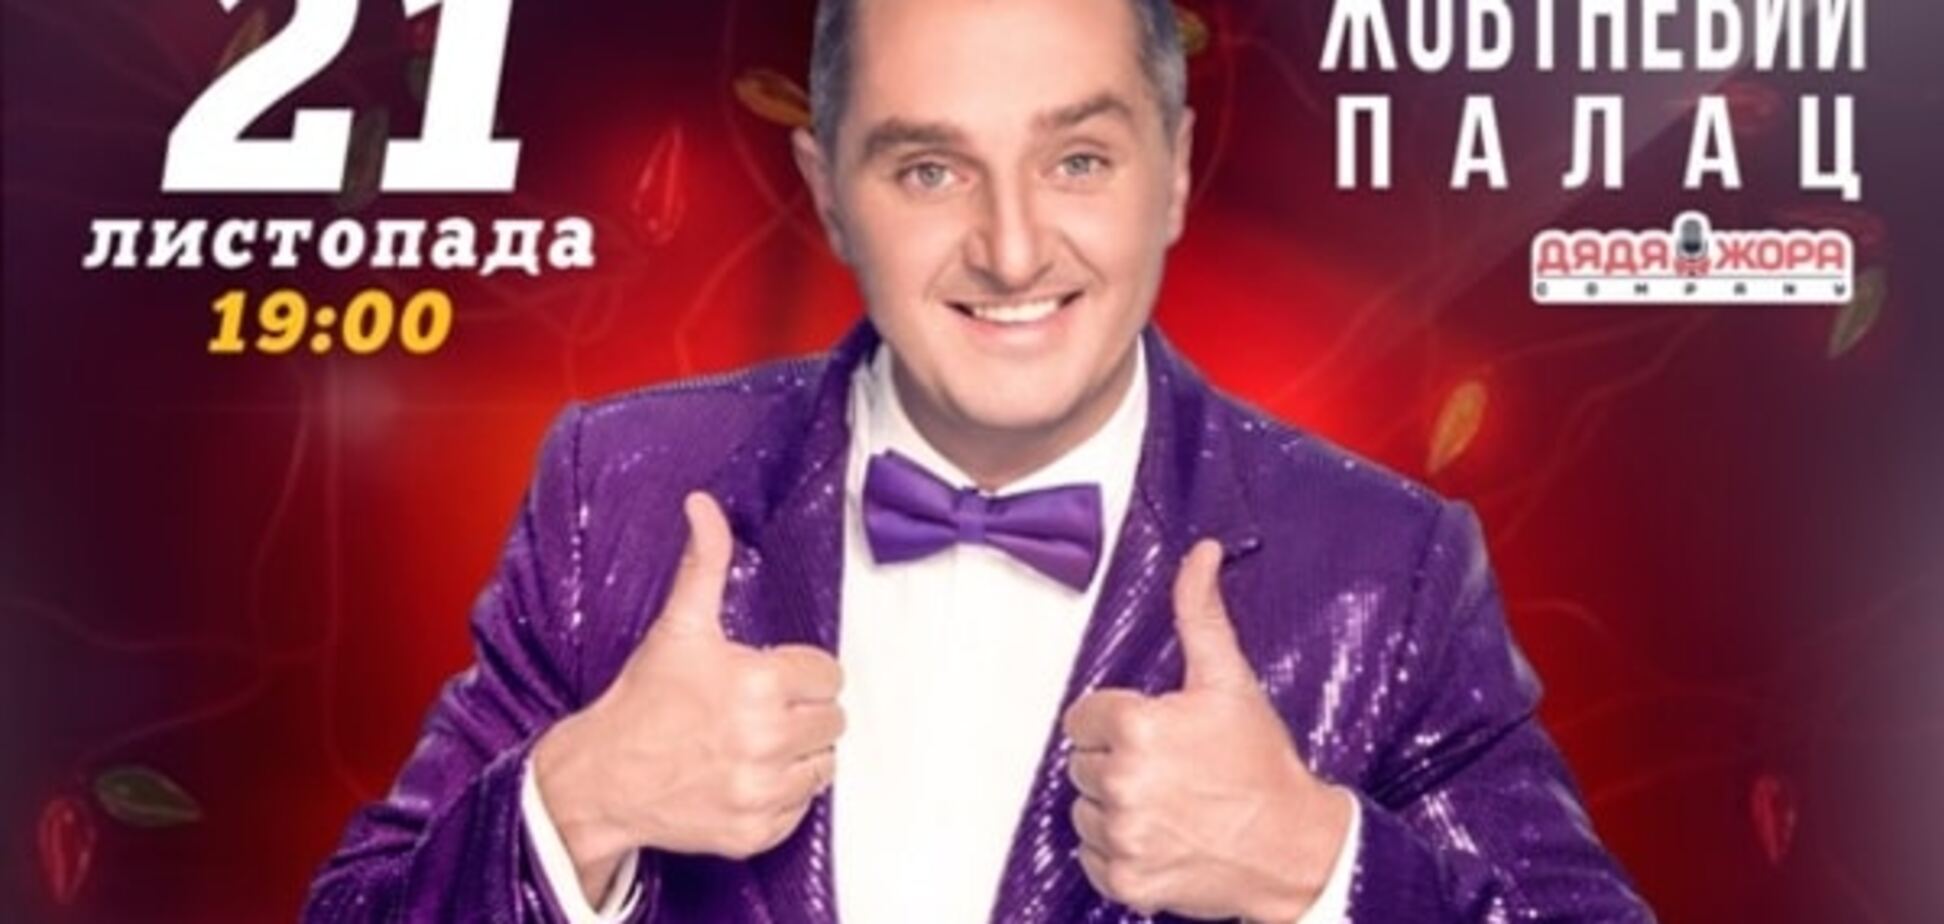 21 ноября Дядя Жора презентует грандиозное шоу 'Новый Украинский COMEDY'